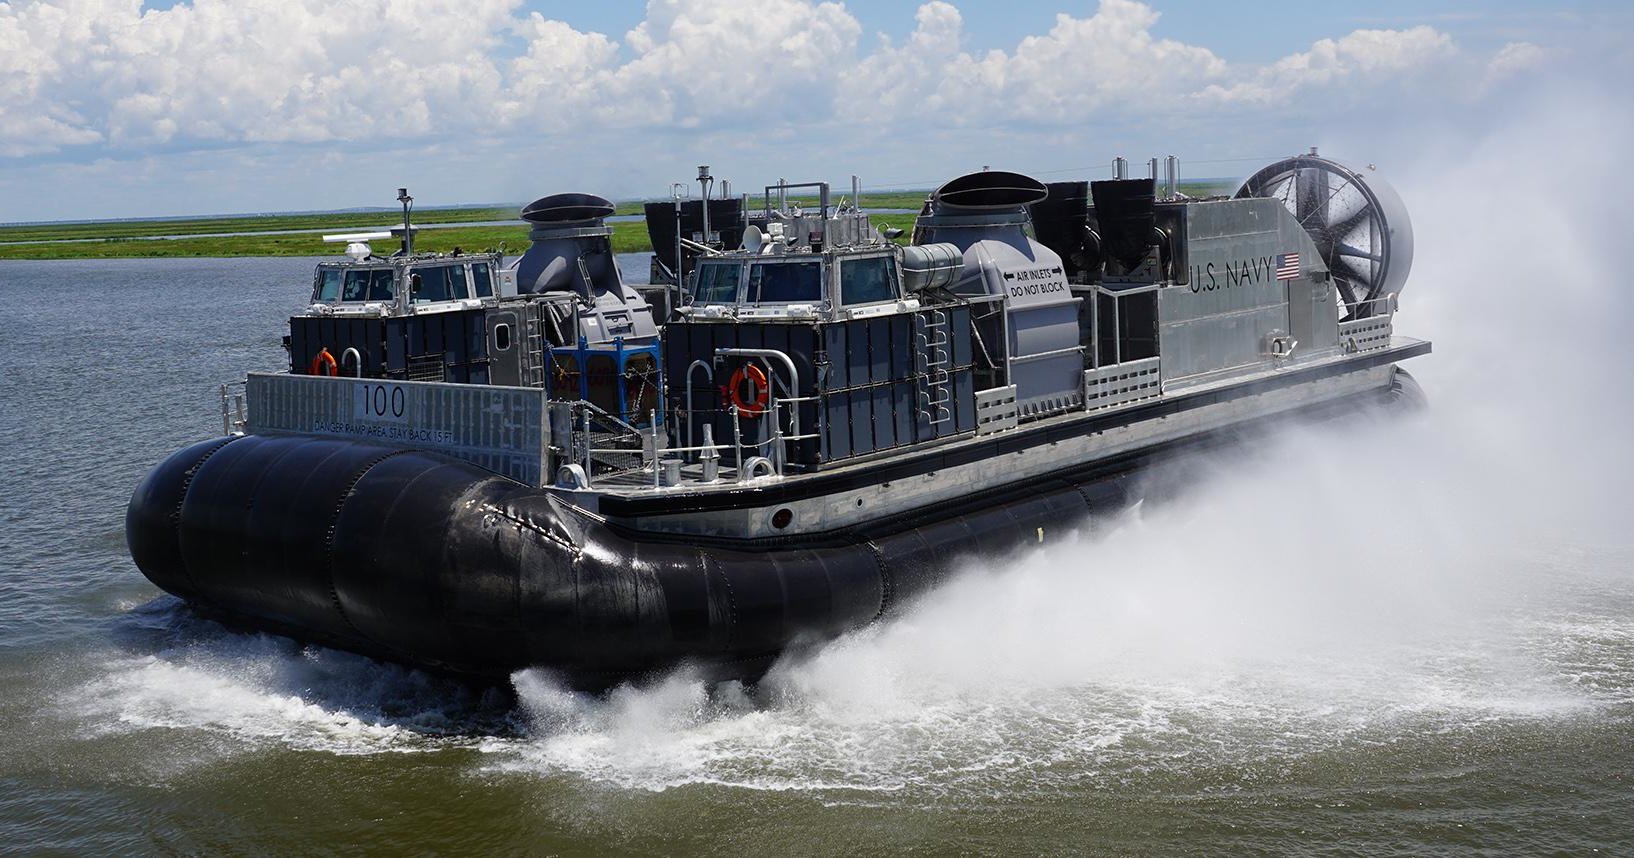 ВМС США испытают судно на воздушной подушке мощностью 25 000 л.с.